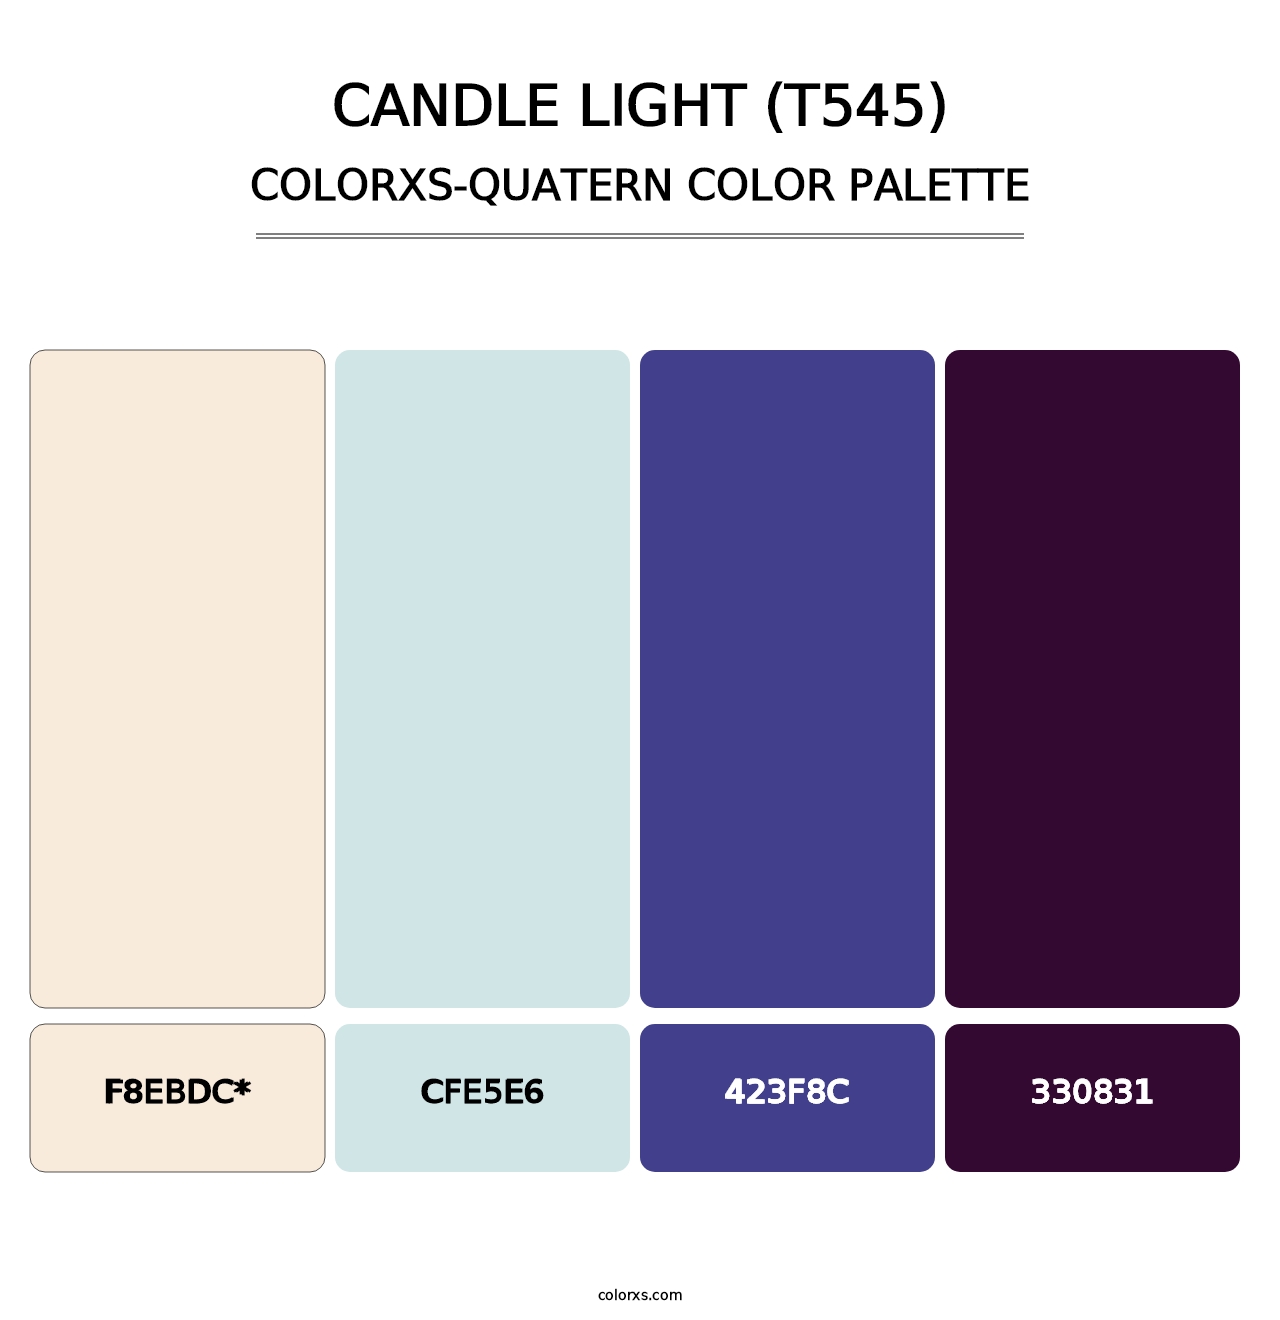 Candle Light (T545) - Colorxs Quad Palette